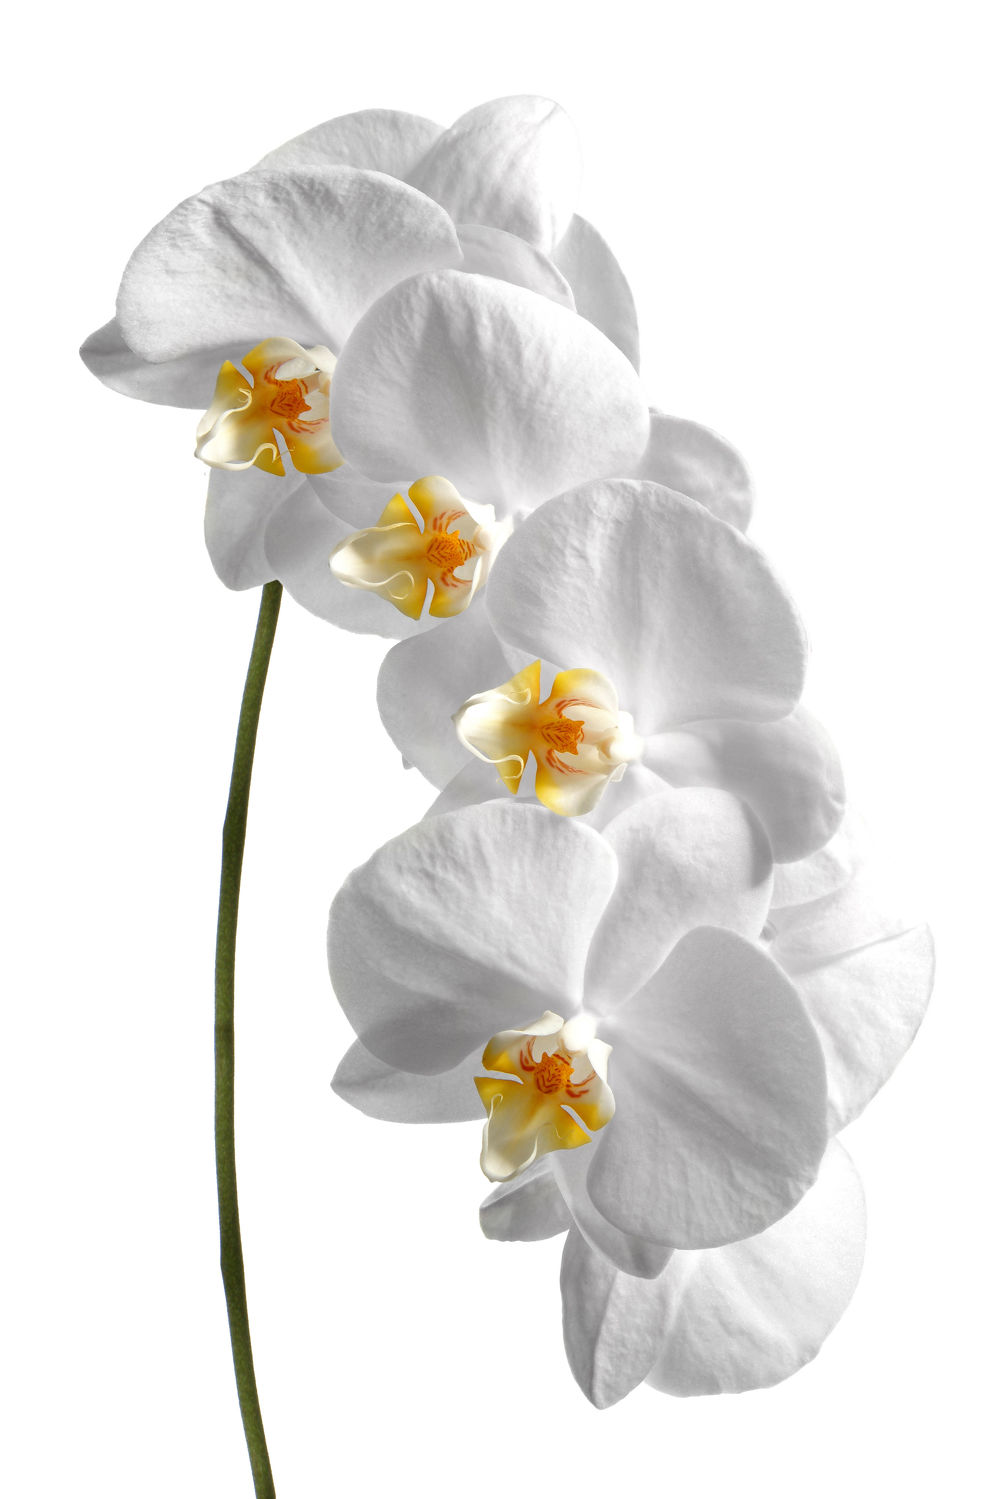 Bild mit Pflanzen, Blumen, Weiß, Orchideen, Blume, Orchidee, Pflanze, Makro, Blüten, blüte, weißer Hintergrund